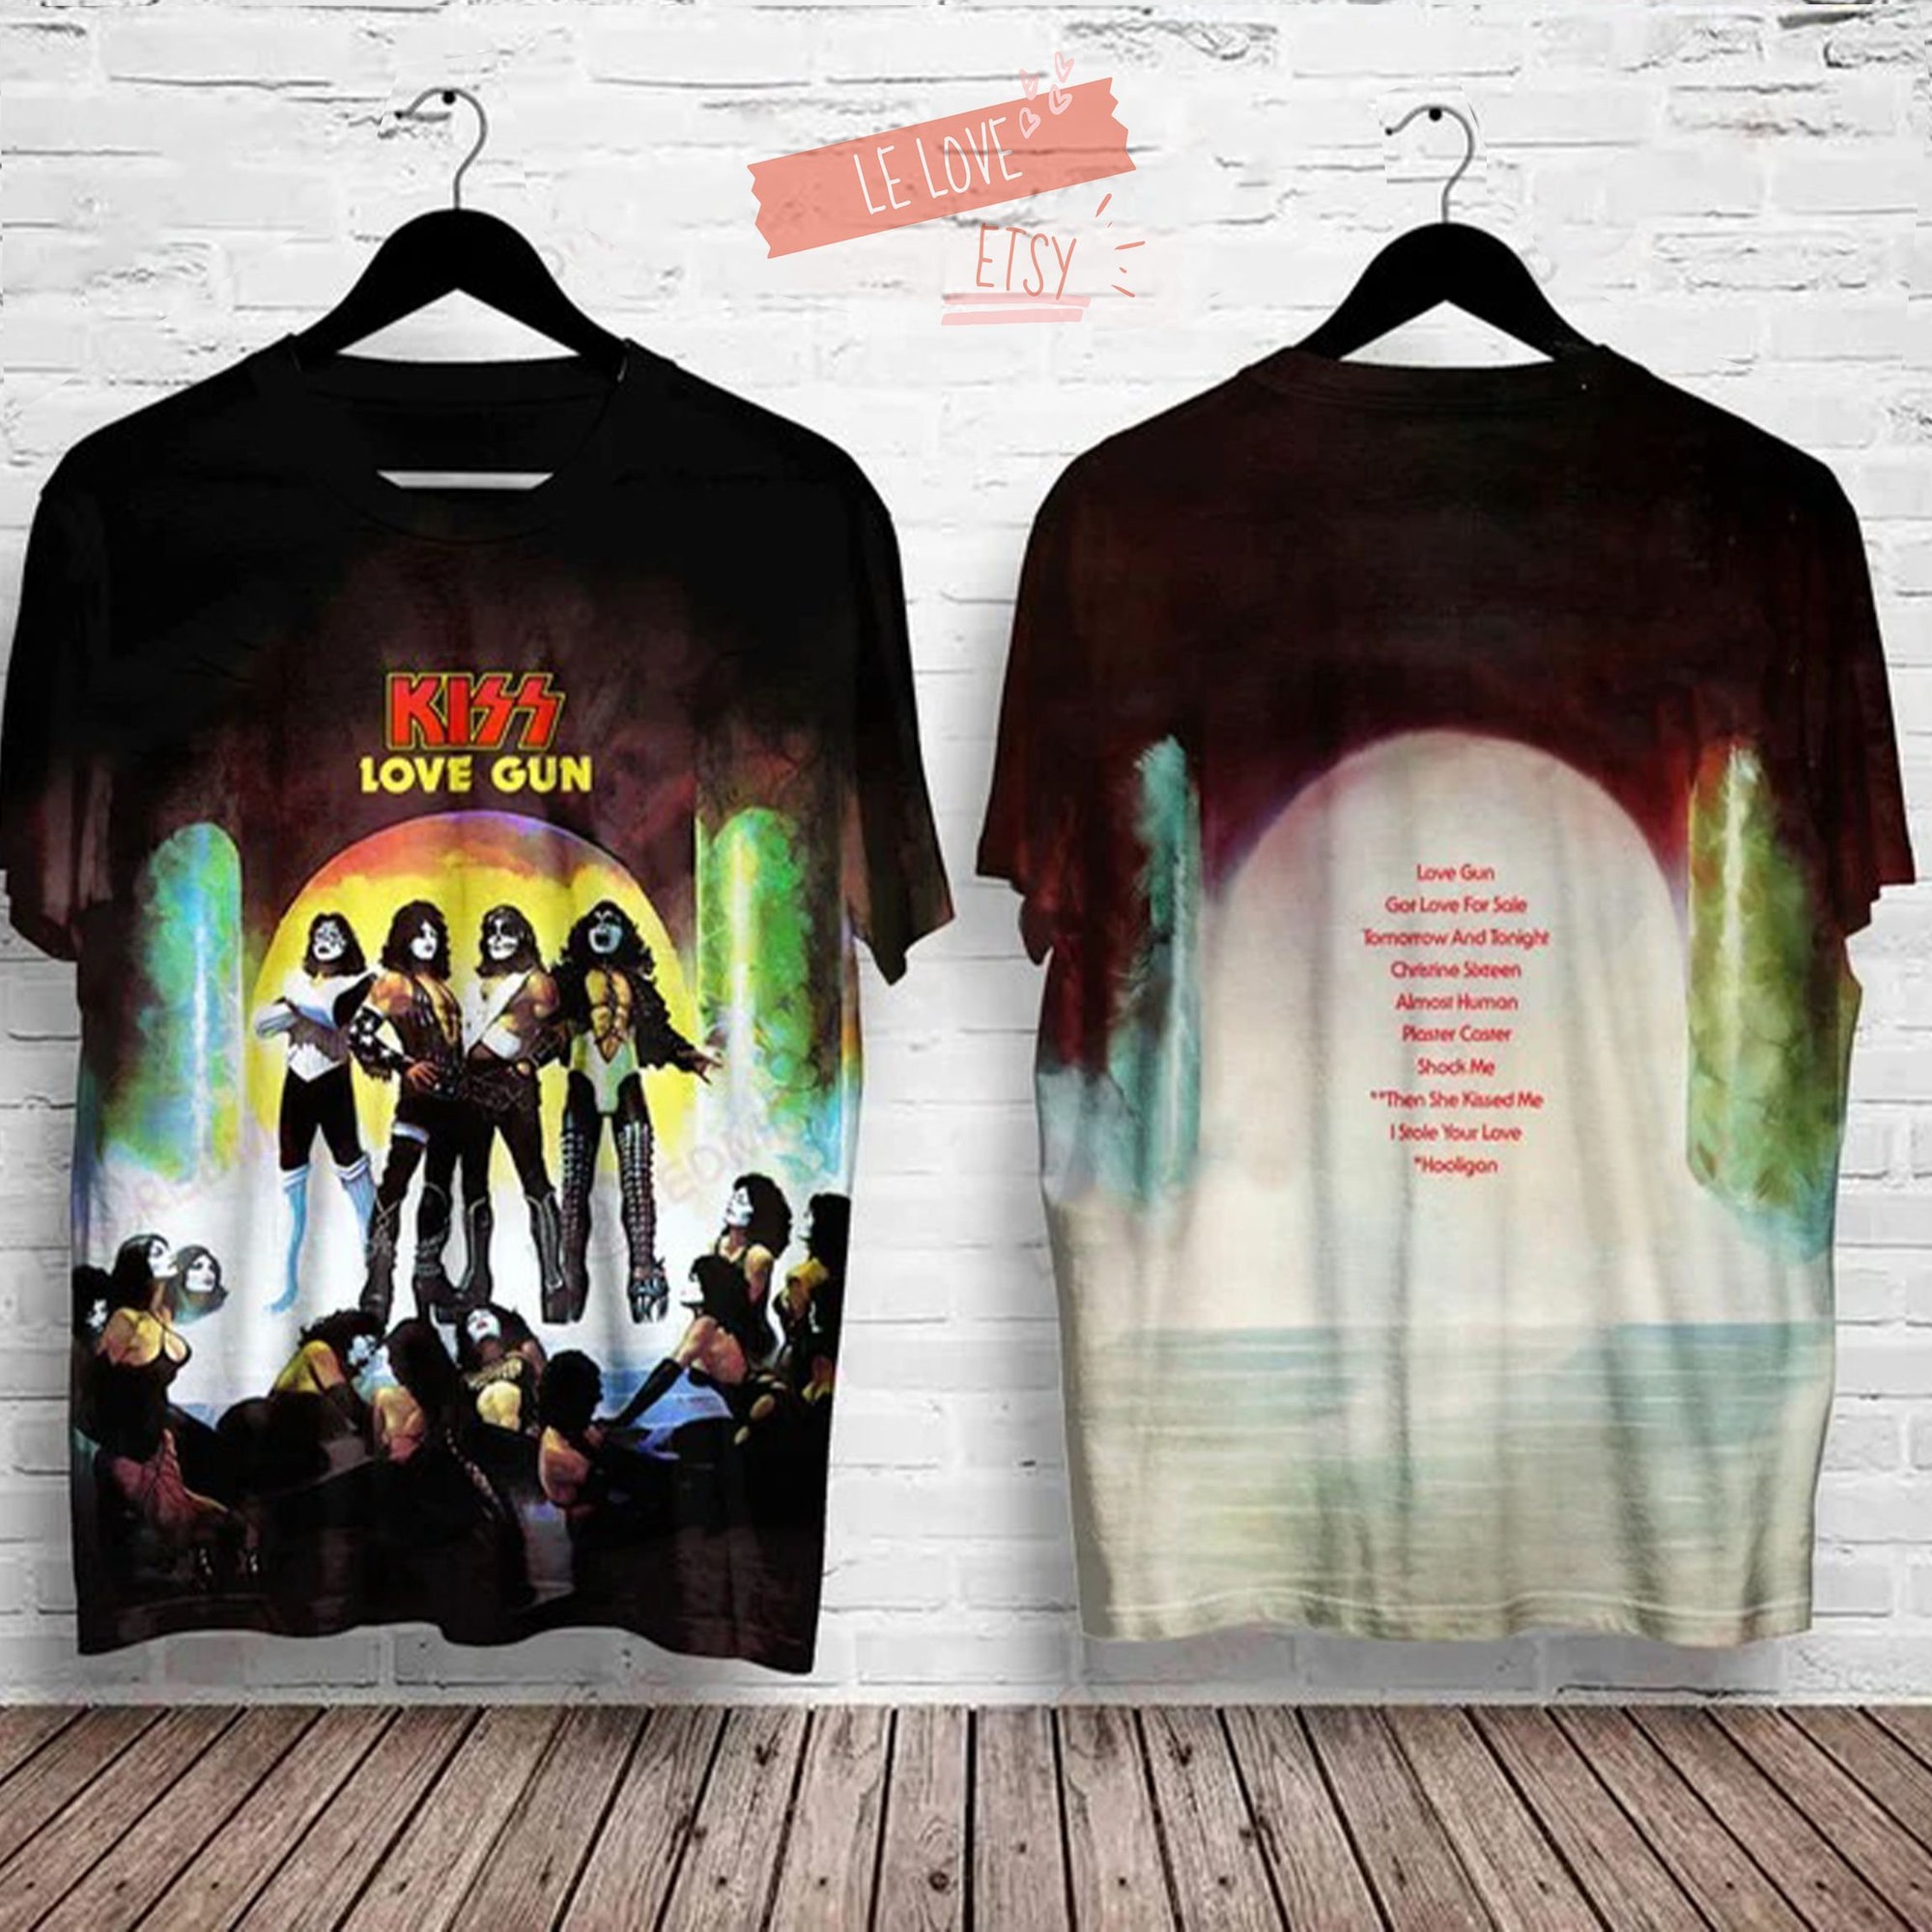 Kizz Love Gun Shirt 3D, Rock Band Shirt 3D